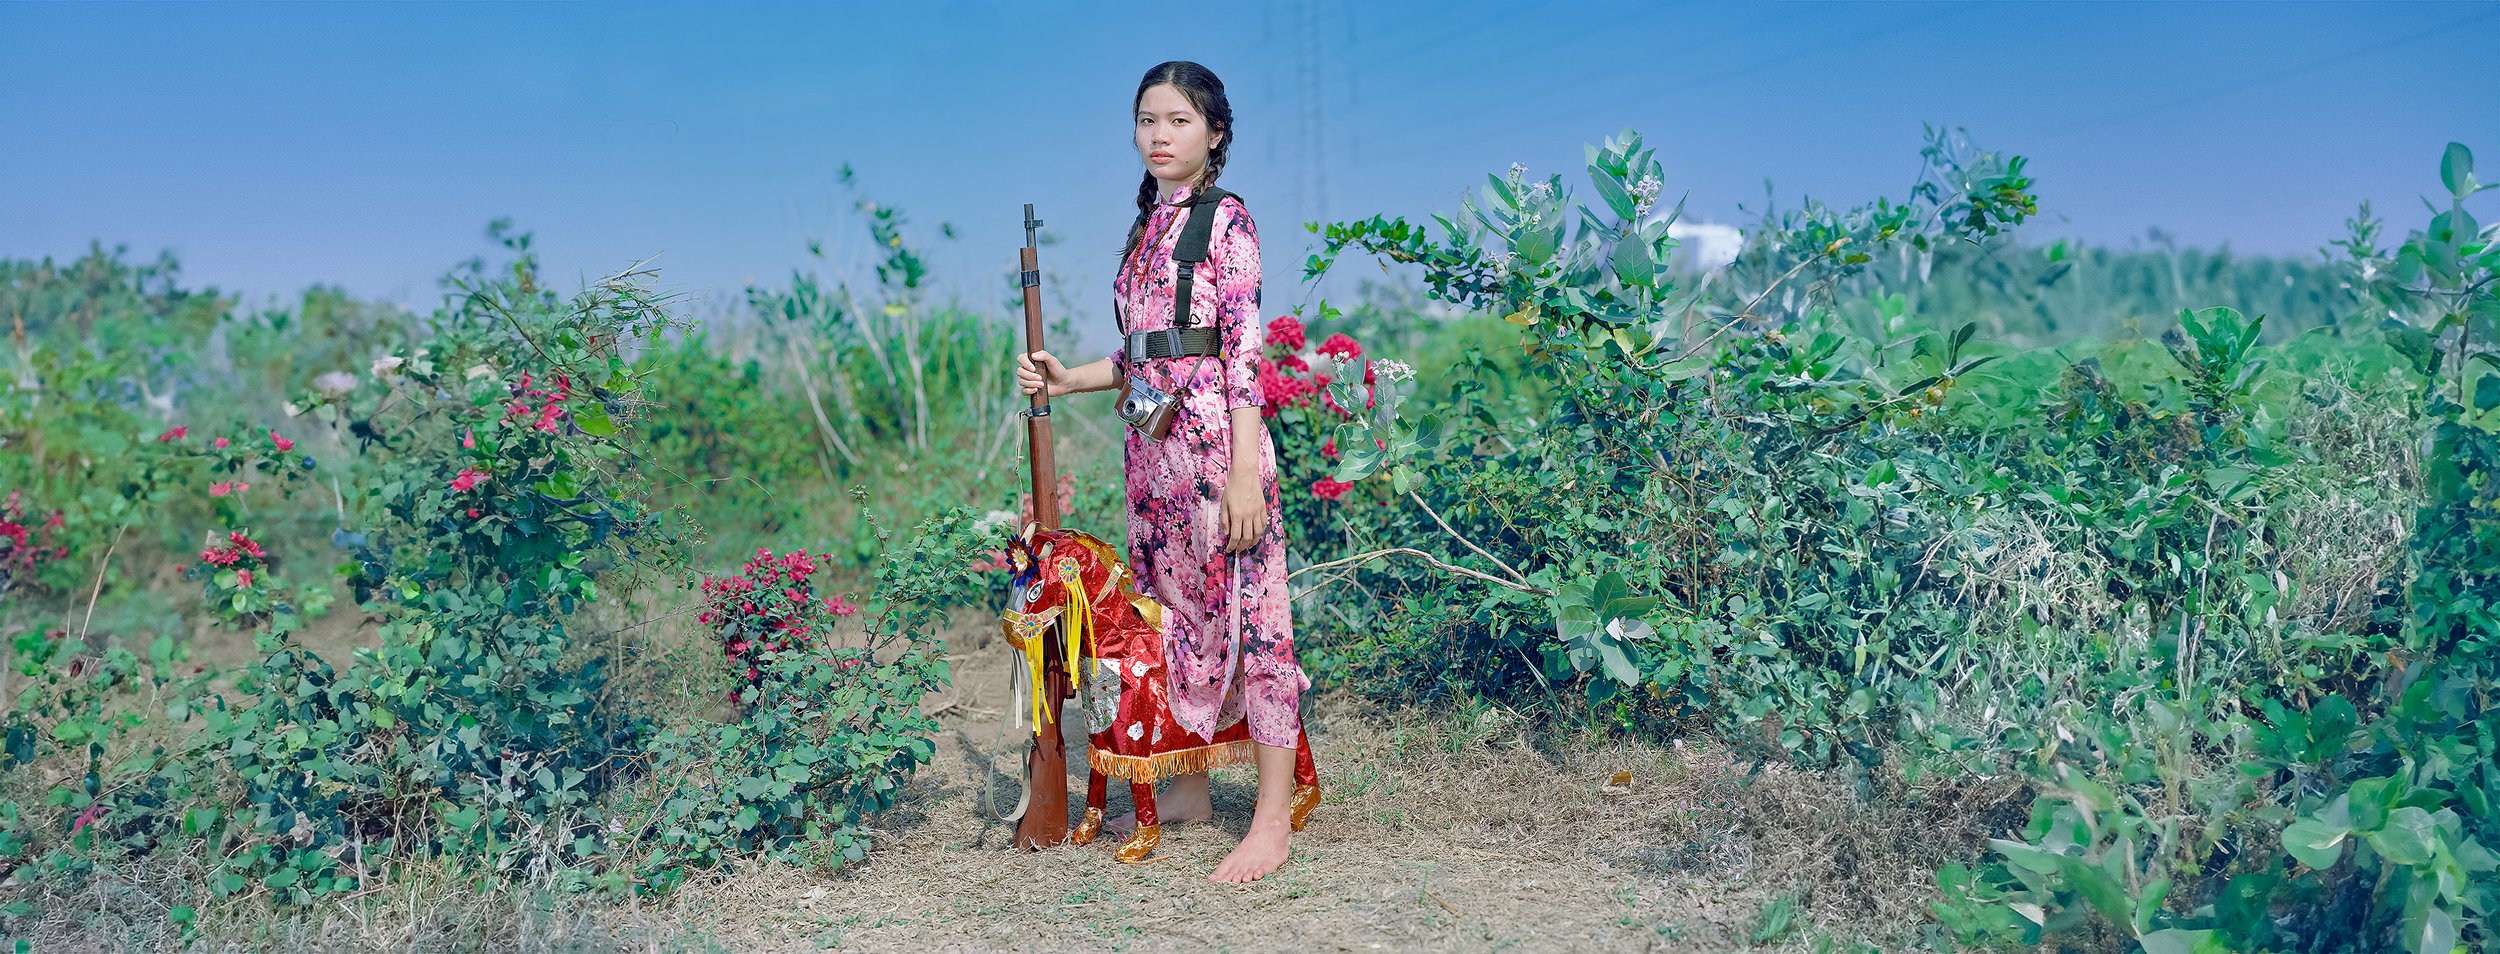   Cưỡi Ngựa Xem Hoa,   from the "Chiến thắng" series.sRGB1966 (ສານຂອງຈິດຕະນາການ)127.63 x 153.03 cm.(50 1/4 x 60 1/4 inch. 